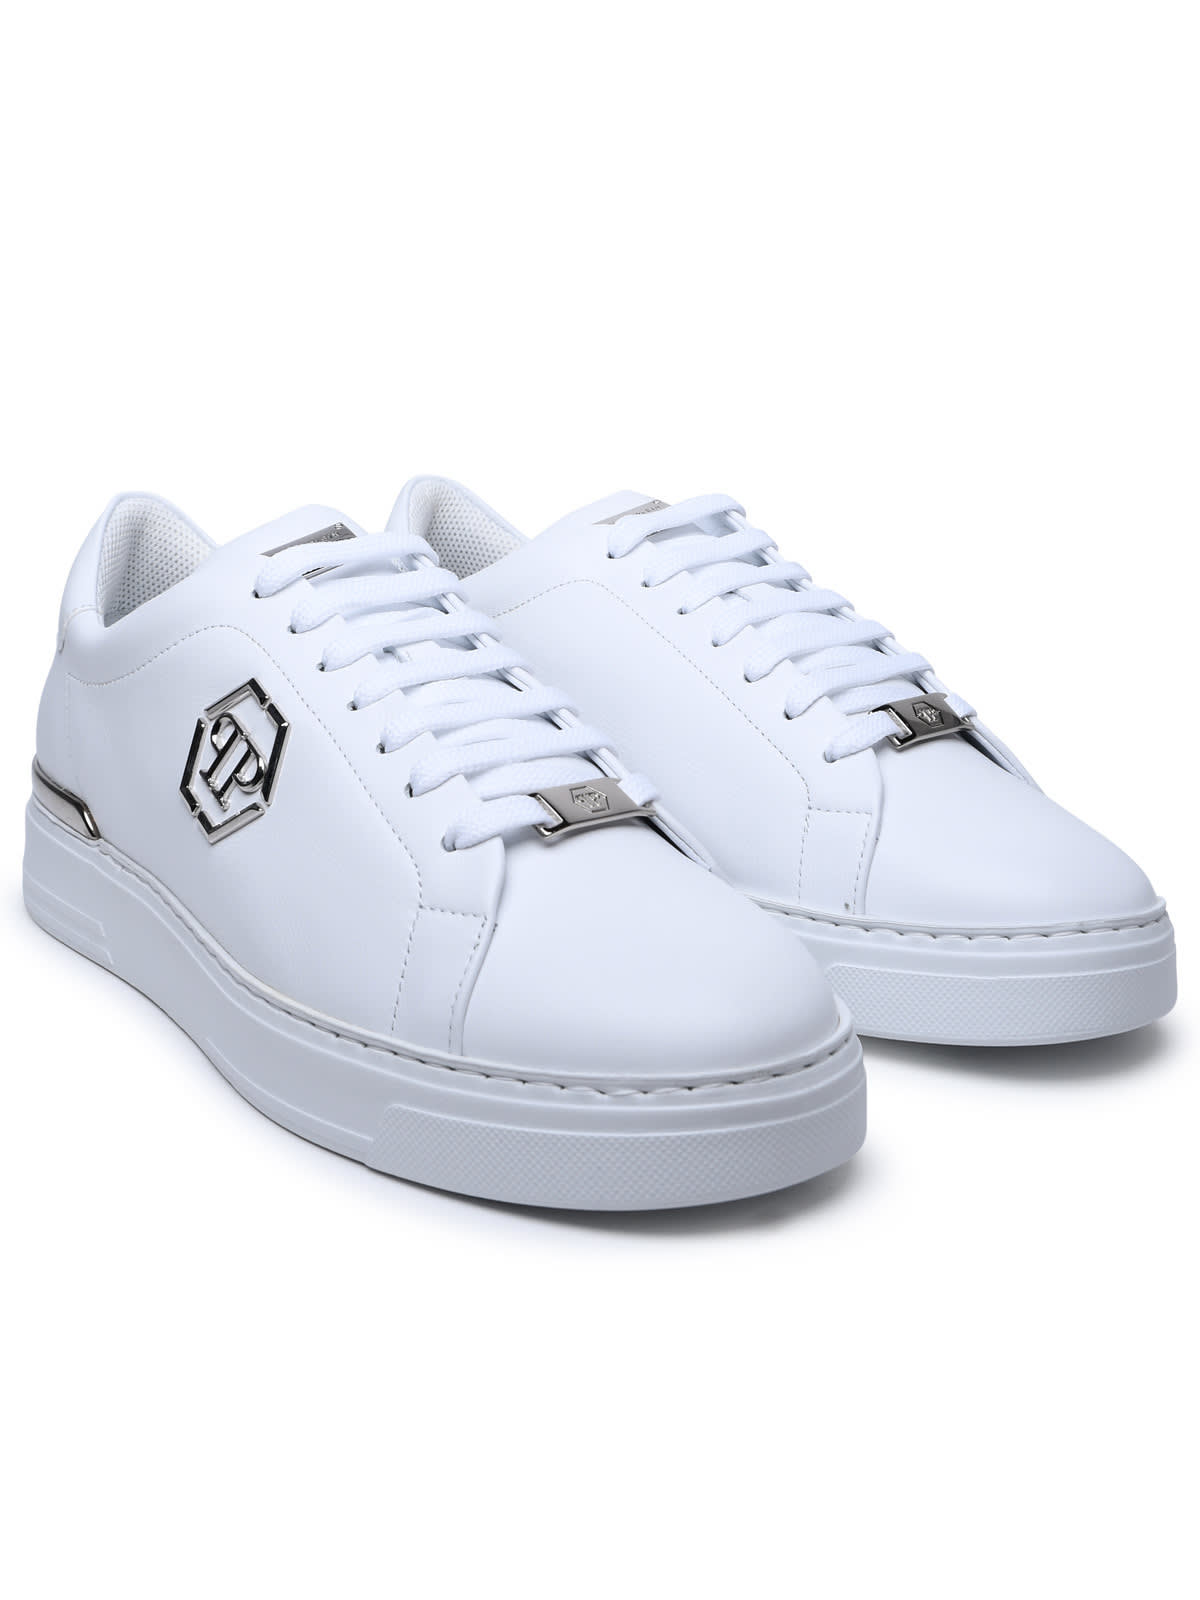 Shop Philipp Plein Hexagon White Leather Sneakers